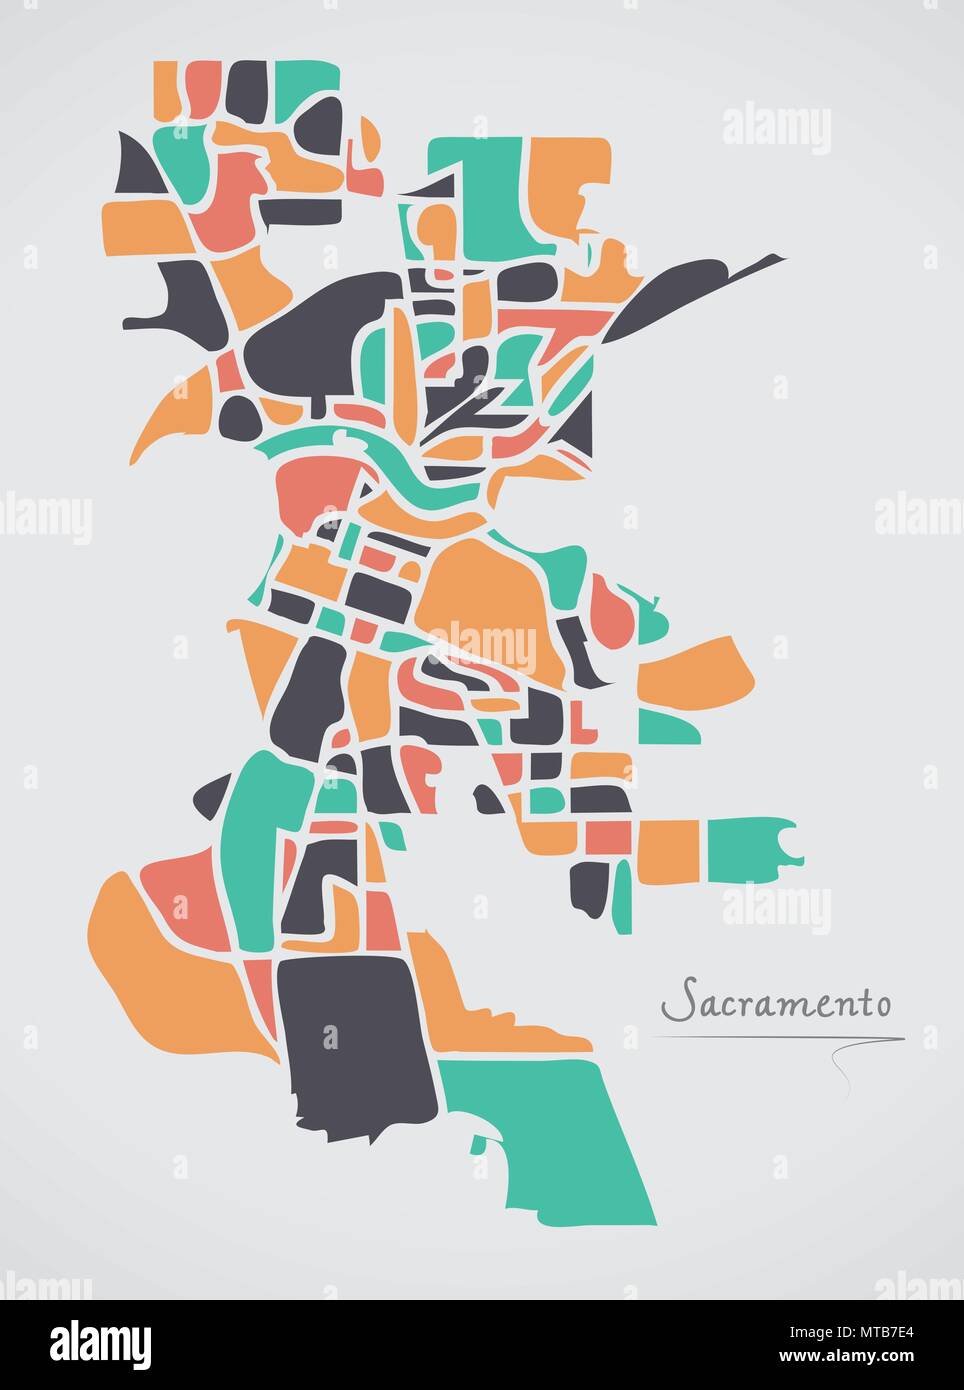 Sacramento Californie Plan avec les quartiers et les formes rondes modernes Illustration de Vecteur